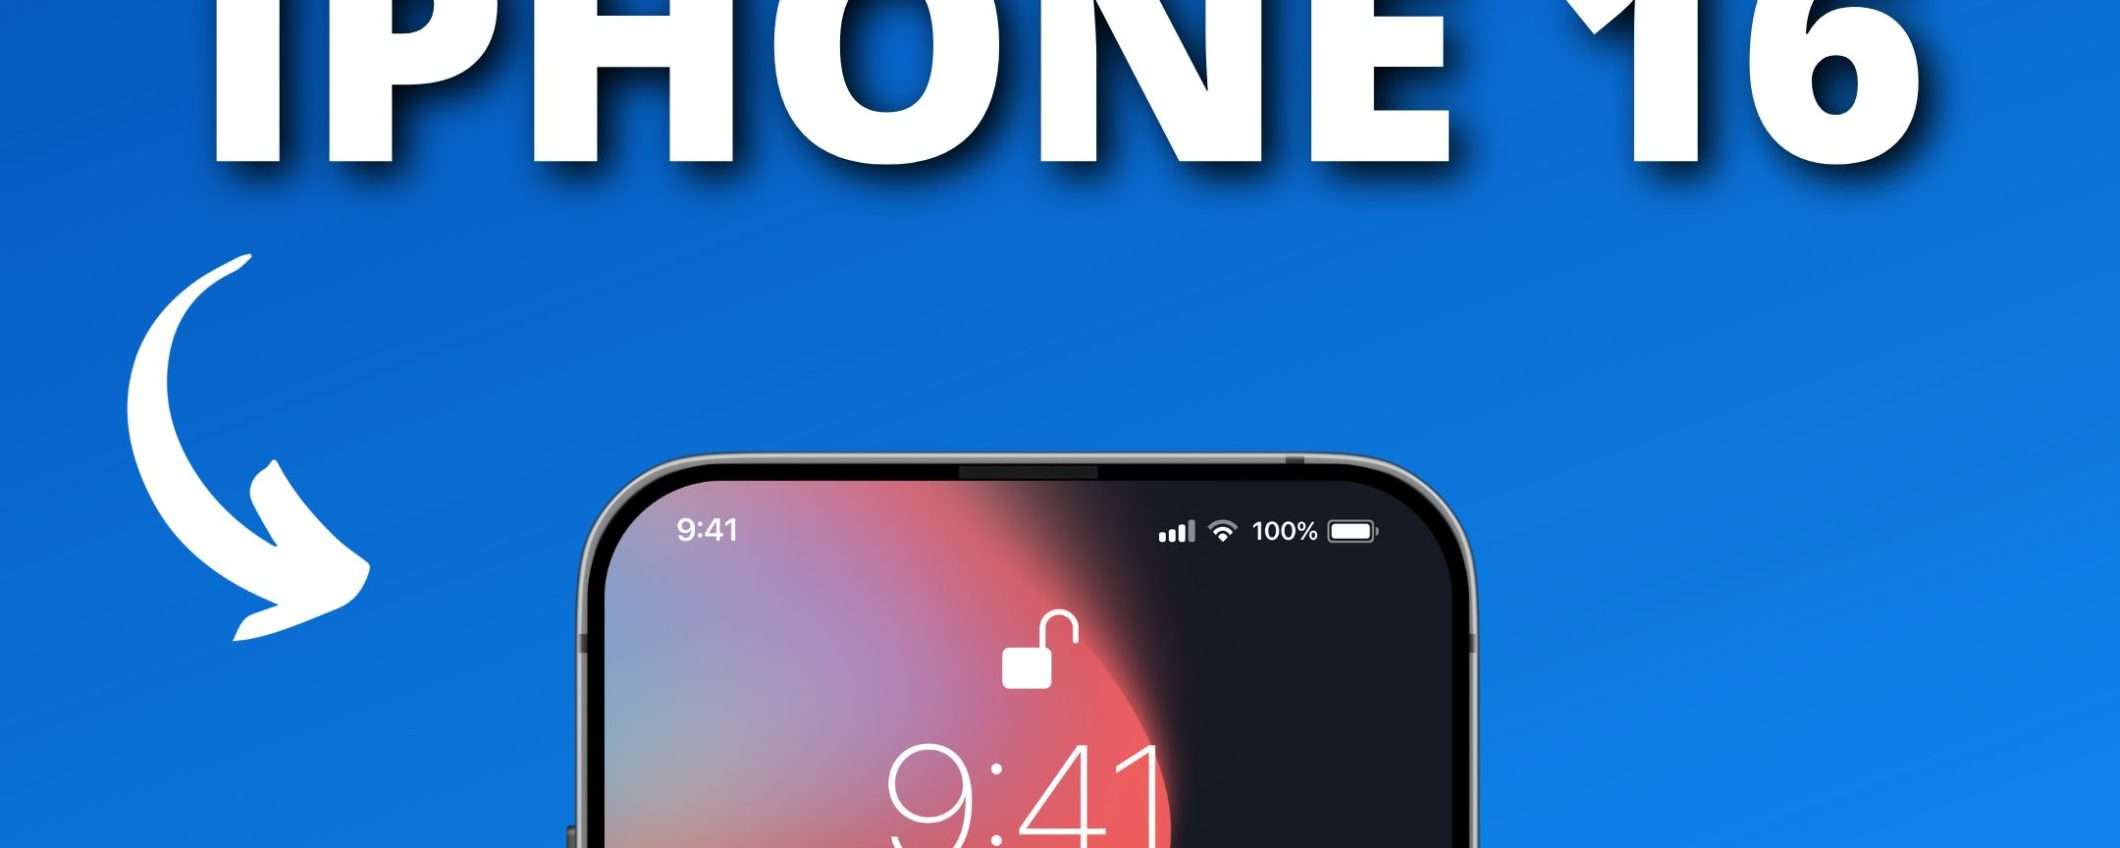 iPhone 16: il Touch ID sotto il display non ci sarà, a quanto pare